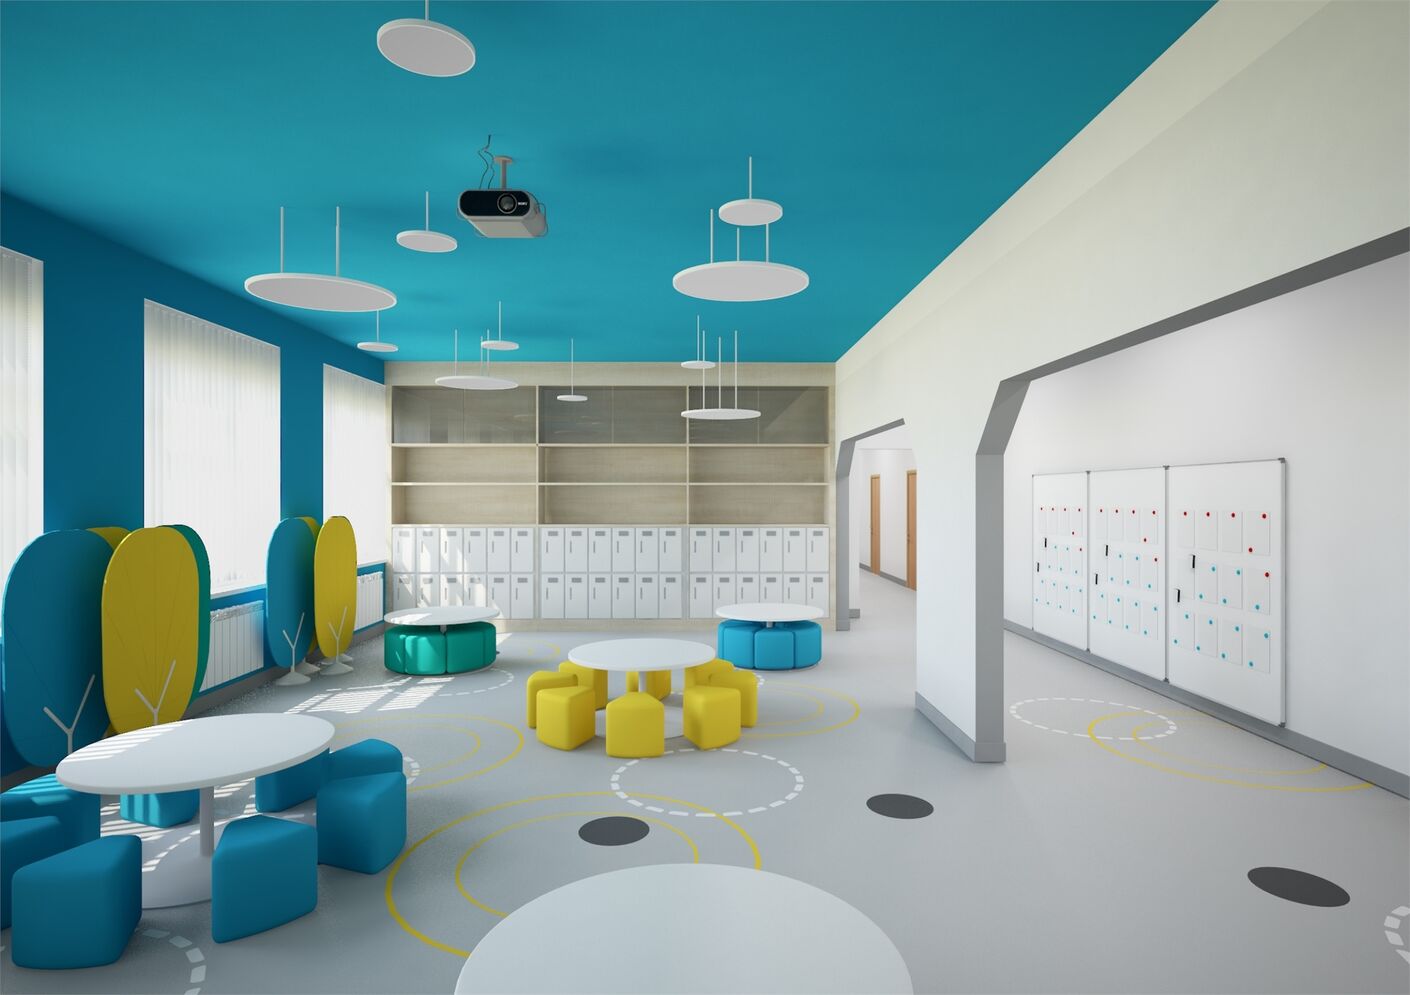 Лаборатория дизайна НИУ ВШЭ разработала концепции дизайна интерьеров московских школ - hsedesignlab.ru